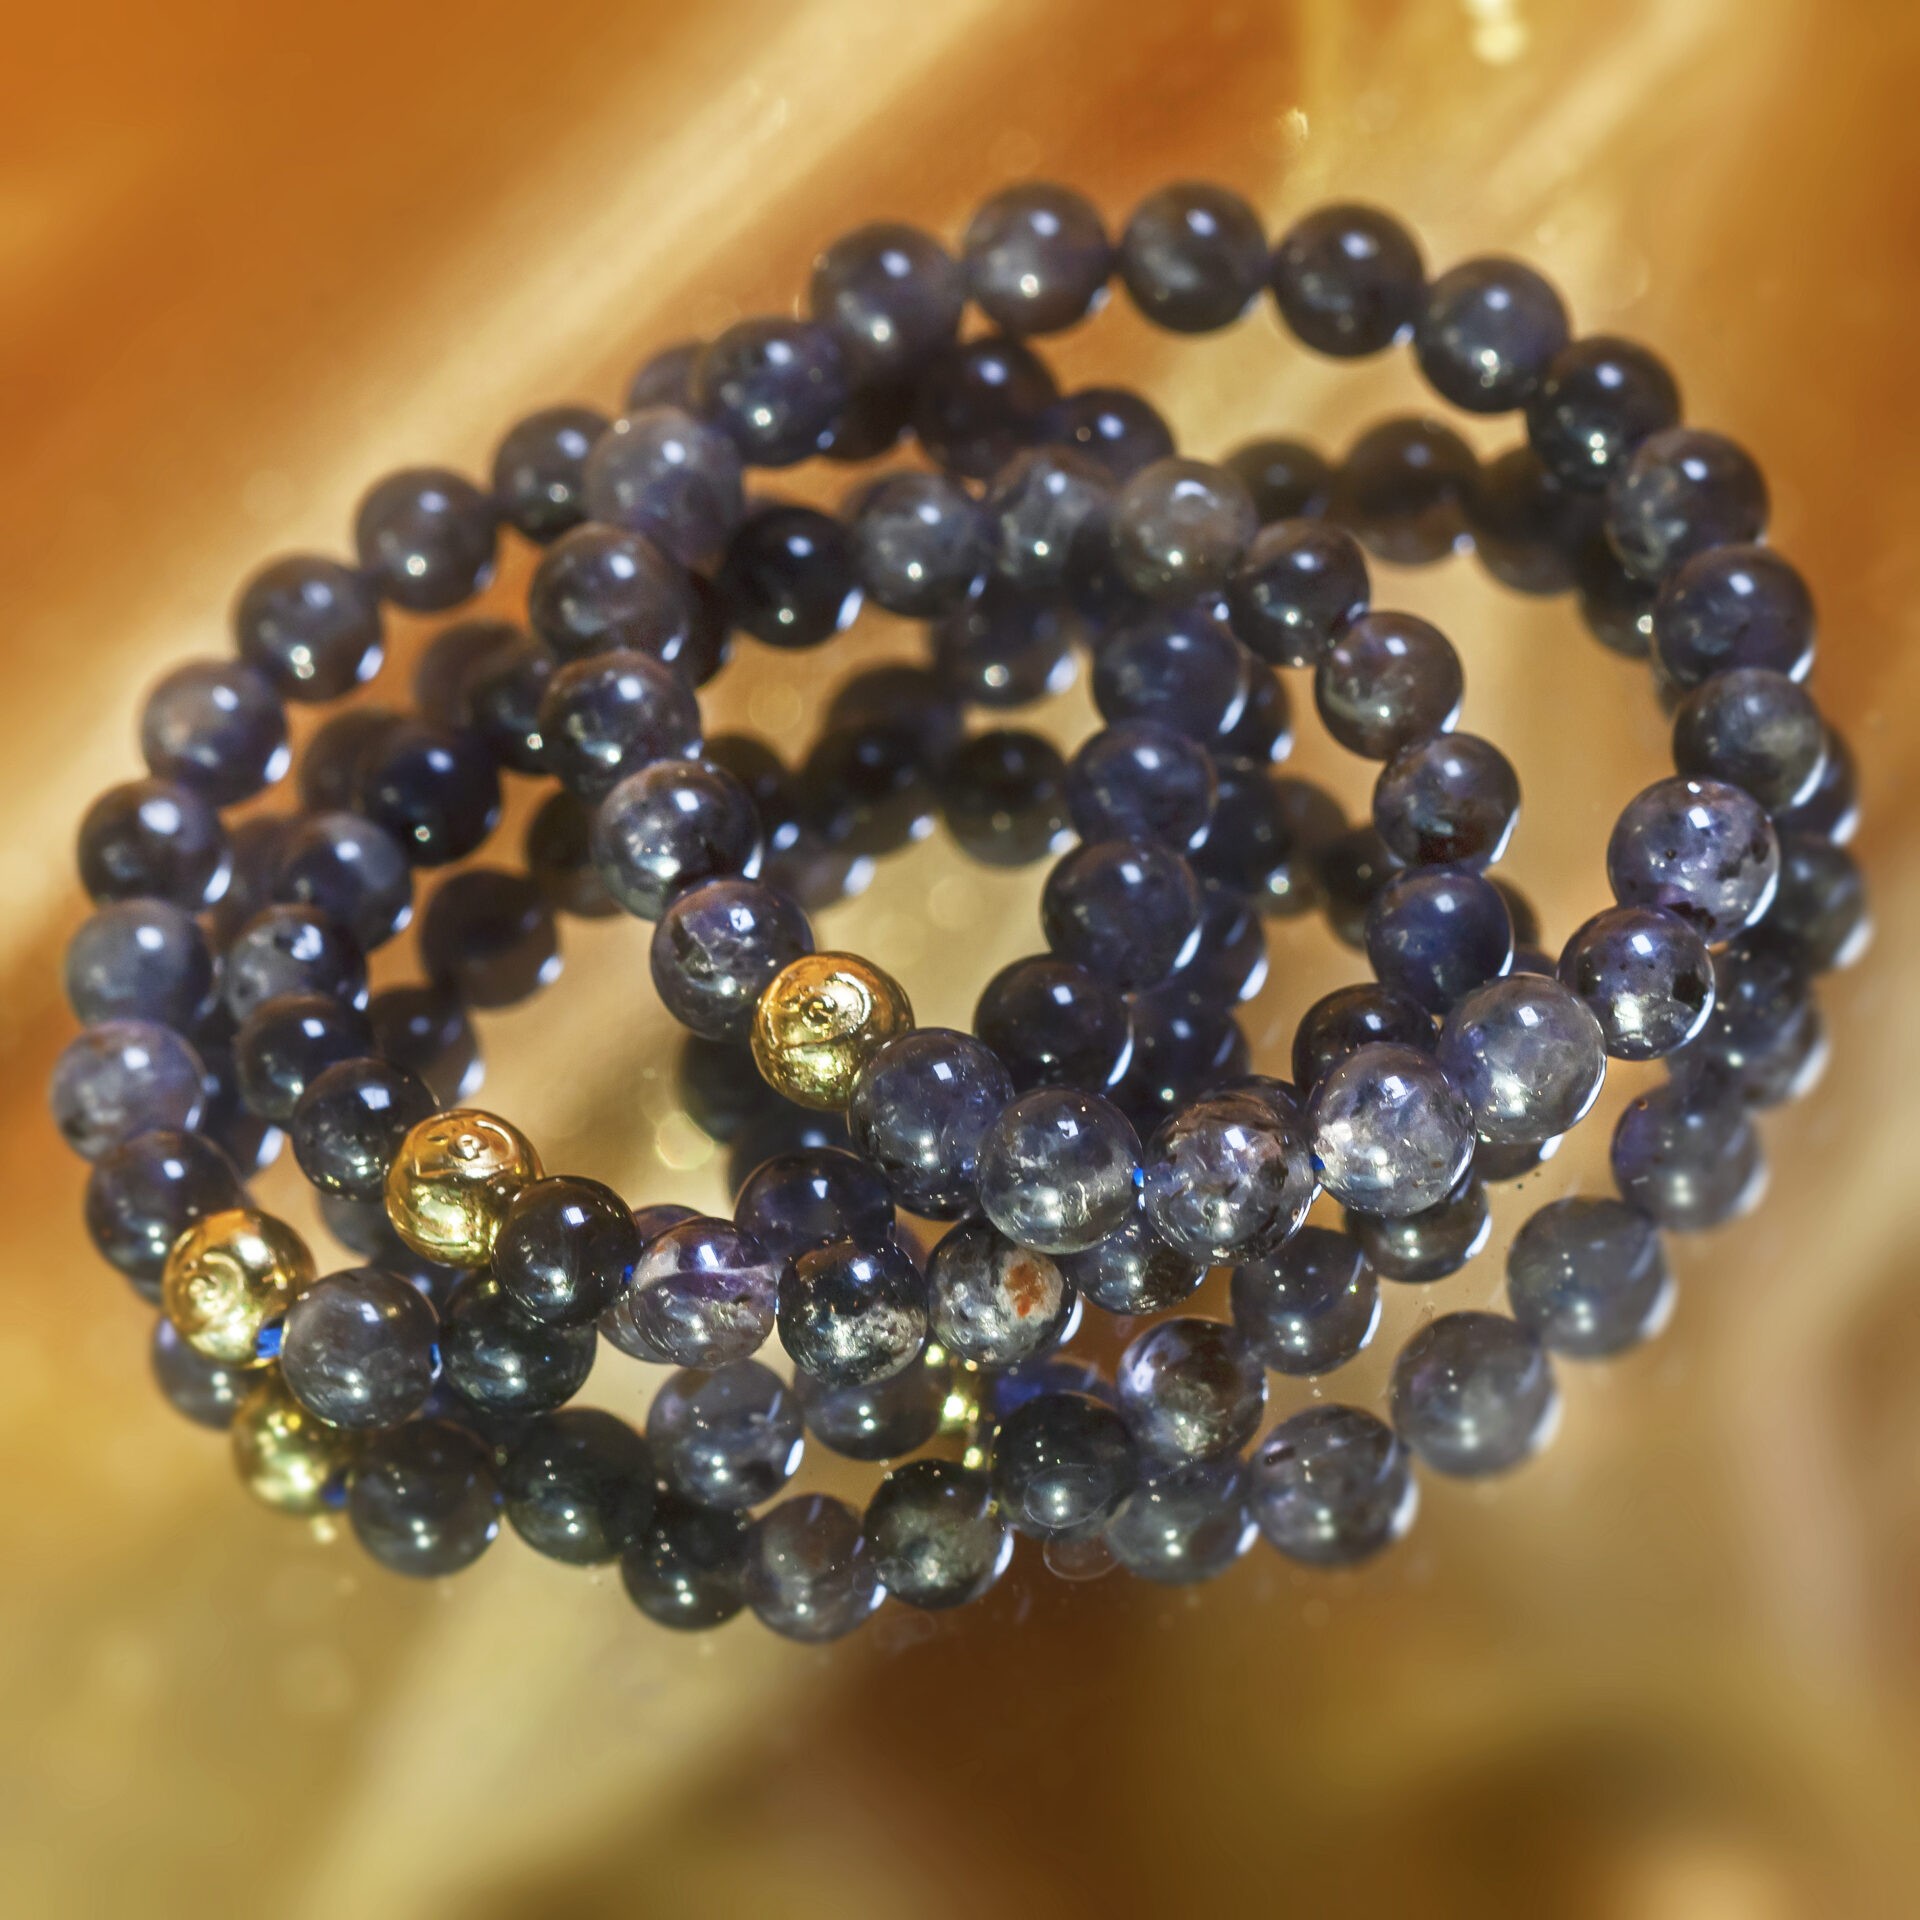 Gemstone Jewelry: Find Your Favorite Gem